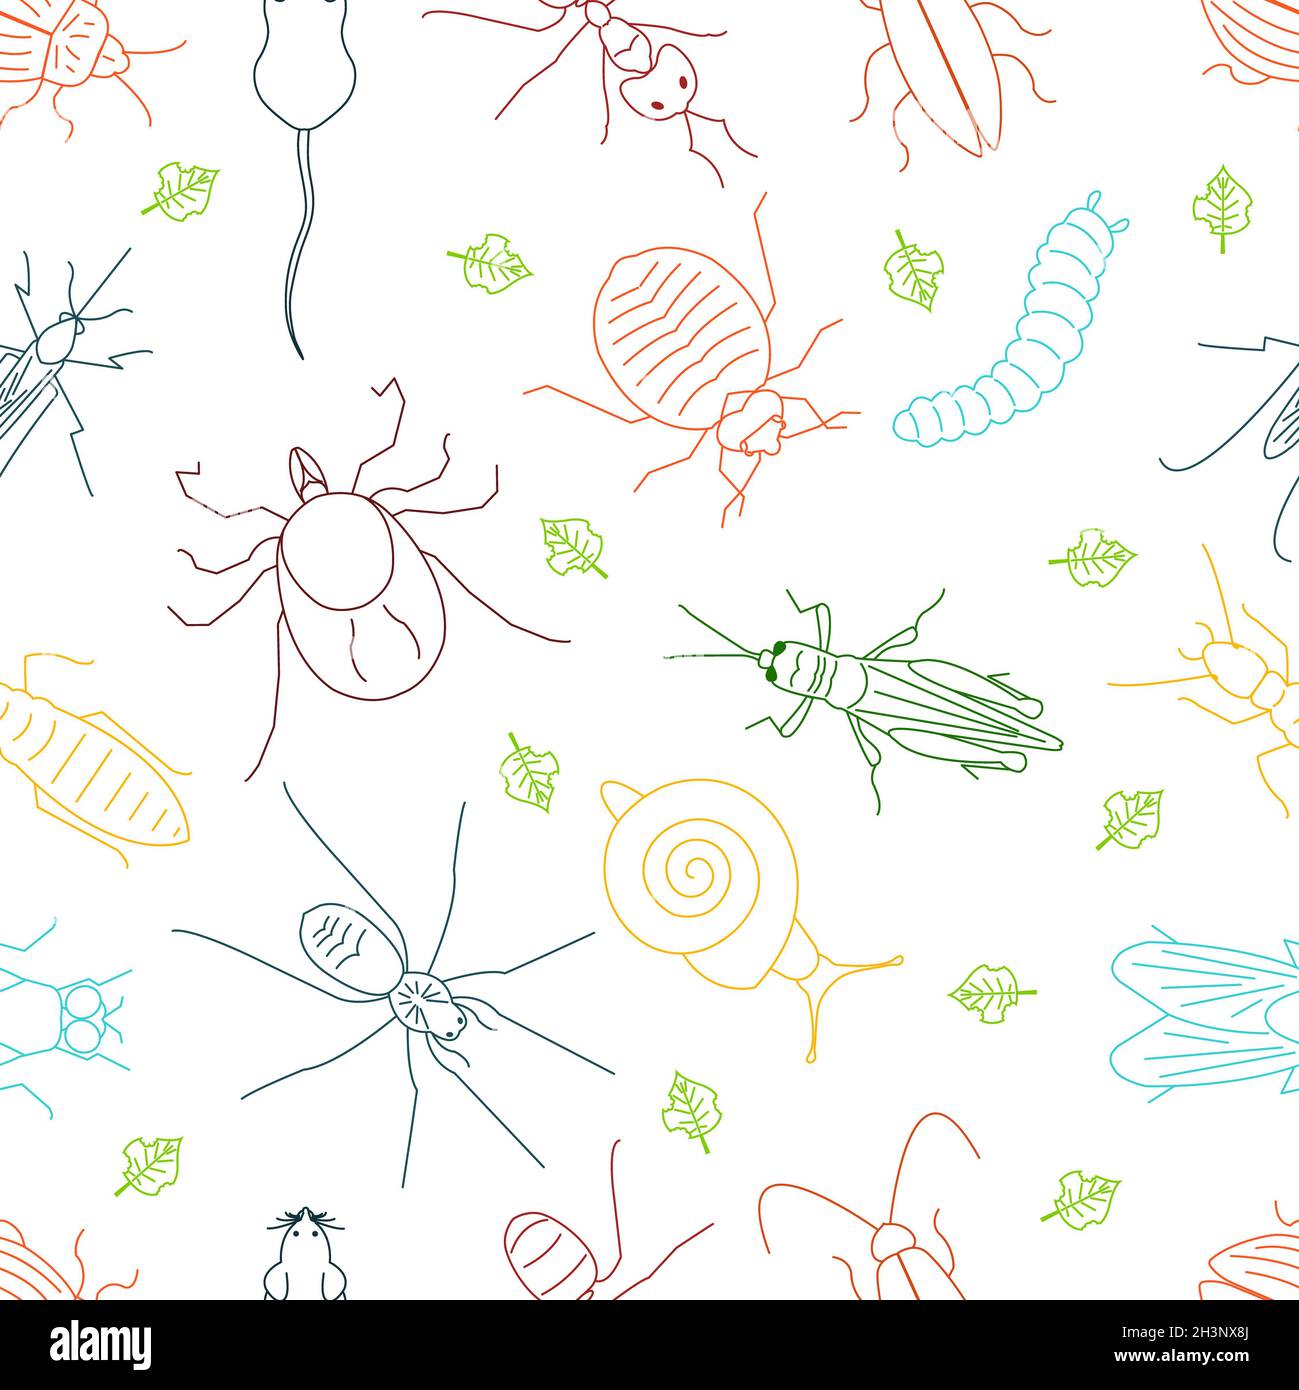 Insectos plagas, ilustración conceptual Foto de stock